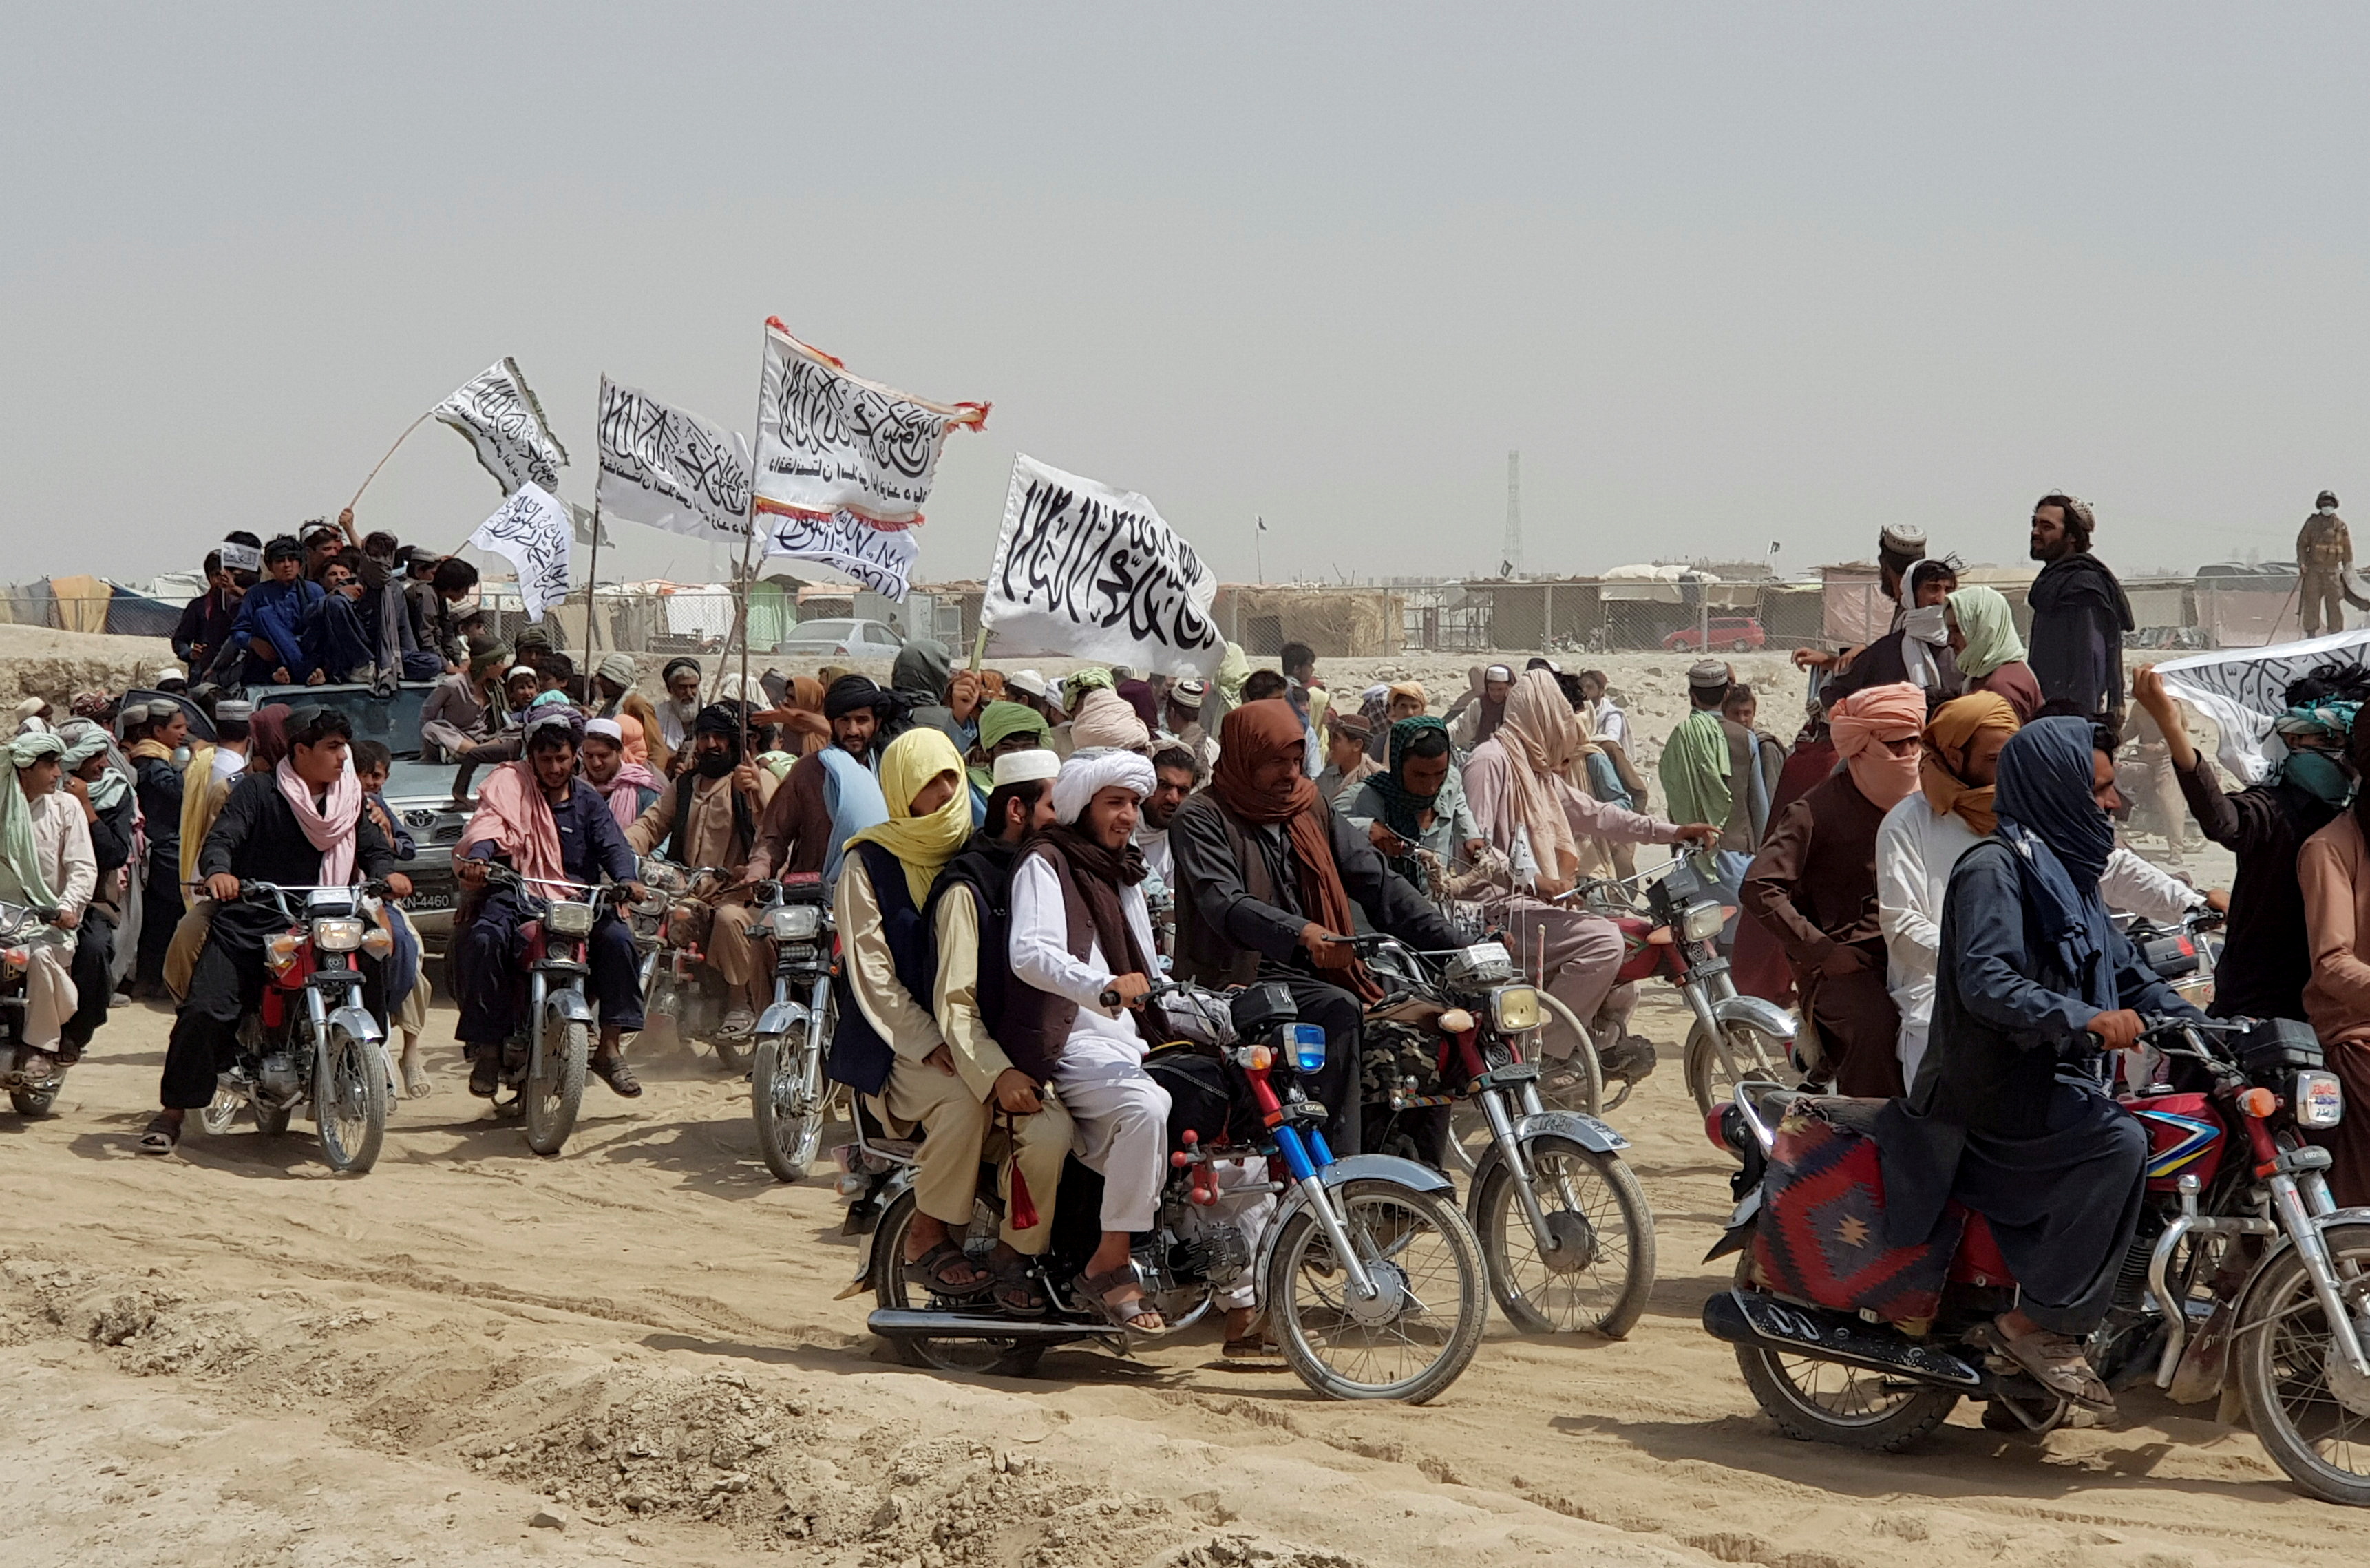 Personas en vehículos, sosteniendo banderas talibanas, se reúnen cerca del cruce de la Puerta de la Amistad en la ciudad fronteriza entre Pakistán y Afganistán de Chaman, Pakistán, 14 de julio de 2021. Fotografía tomada el 14 de julio de 2021. (REUTERS / Abdul Khaliq Achakzai)